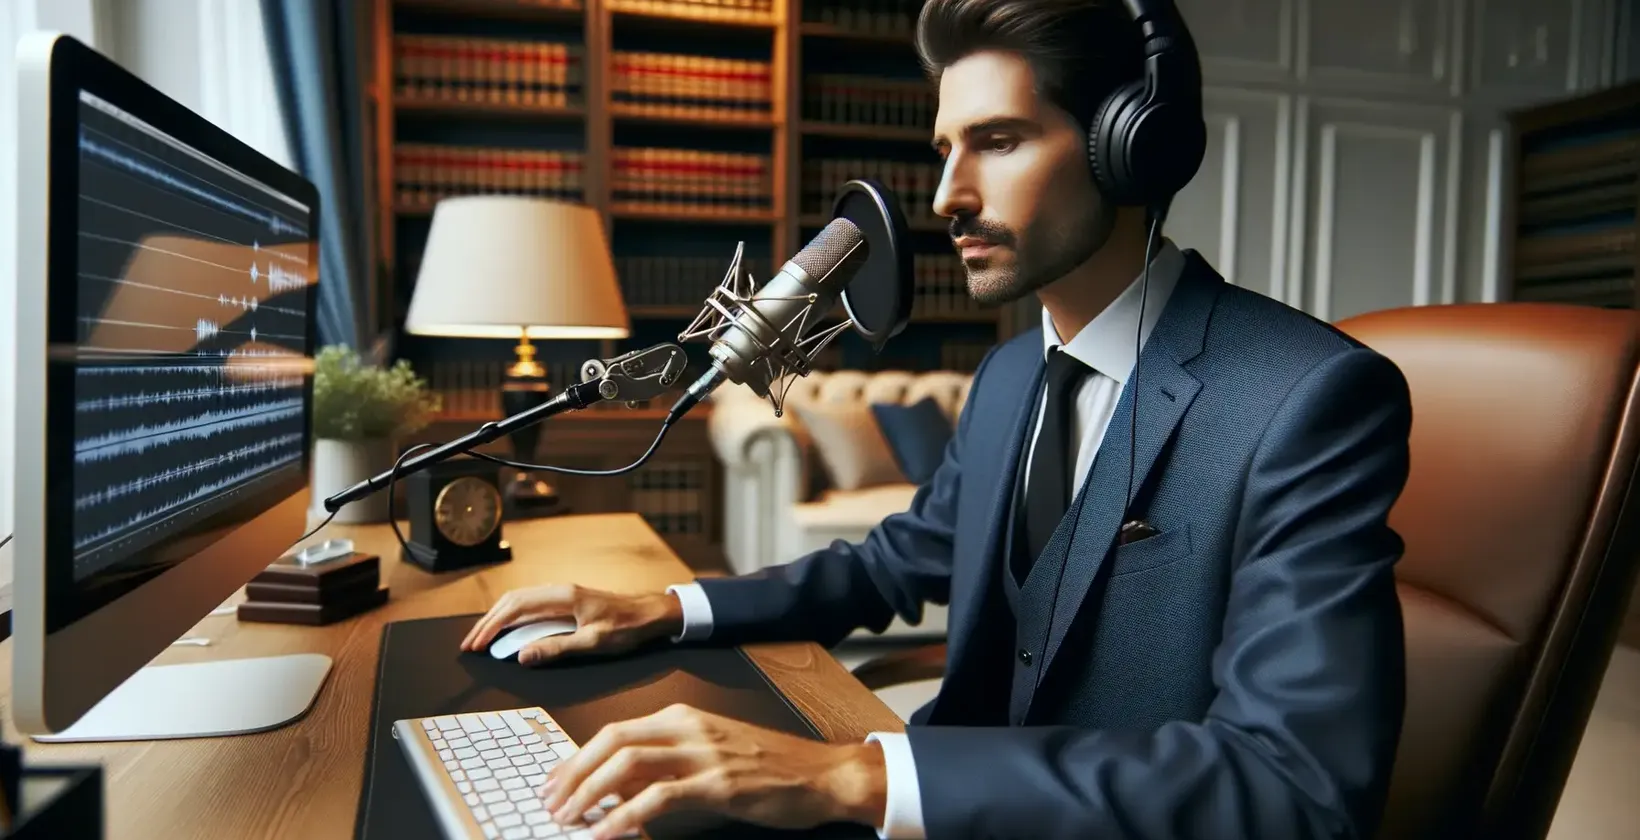 Advogado em um processo usando software de transcrição para analisar gravações legais.